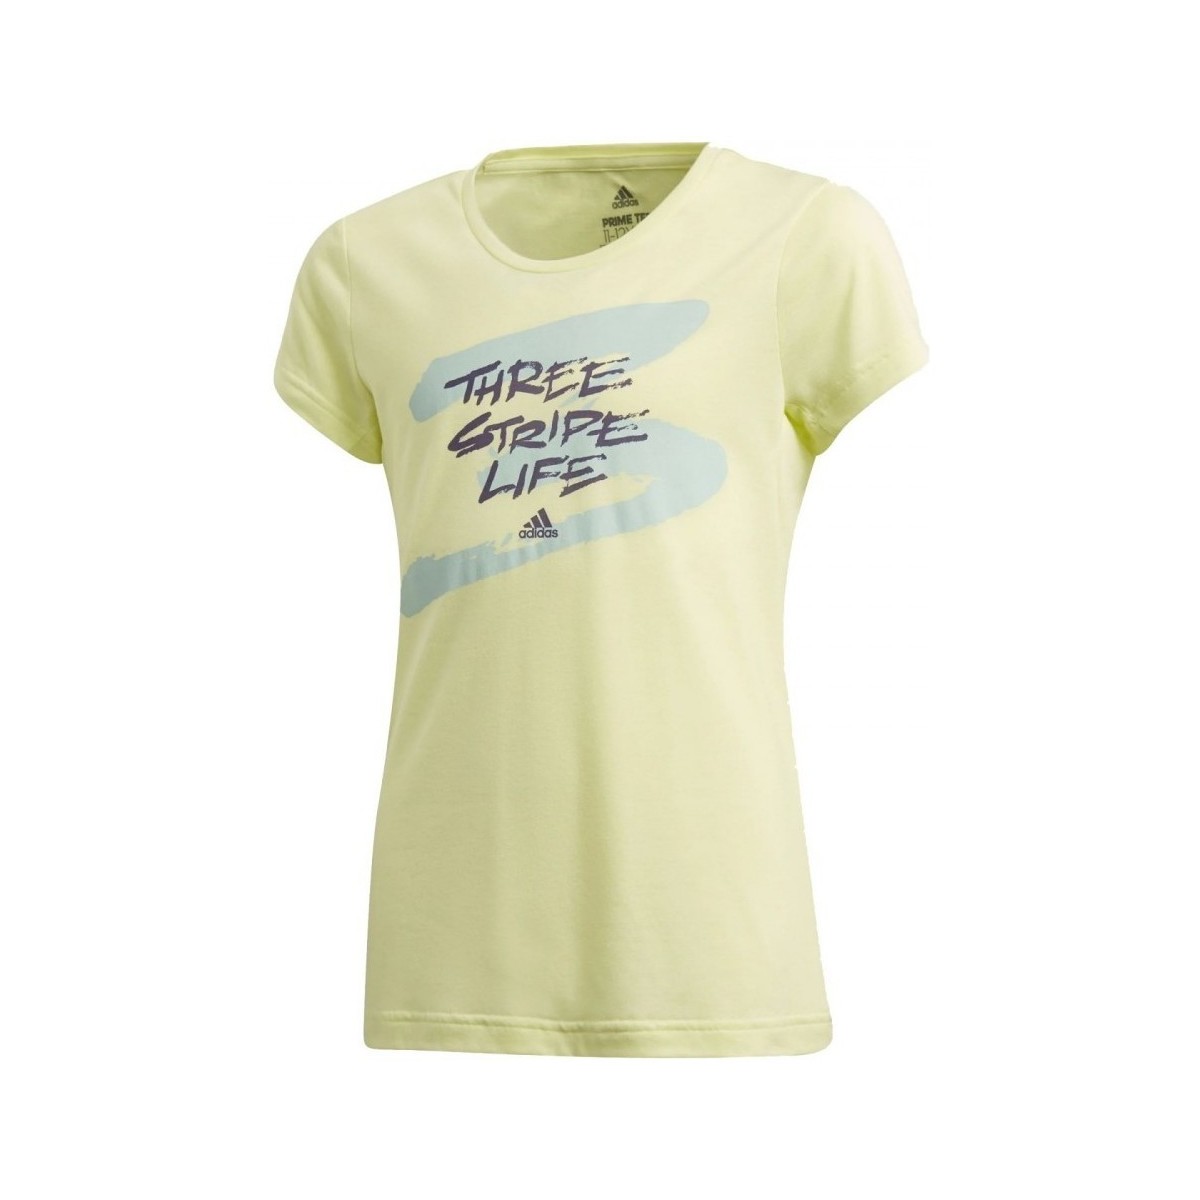 Textiel Meisjes T-shirts korte mouwen adidas Originals Jg Tr Prime Tee Geel